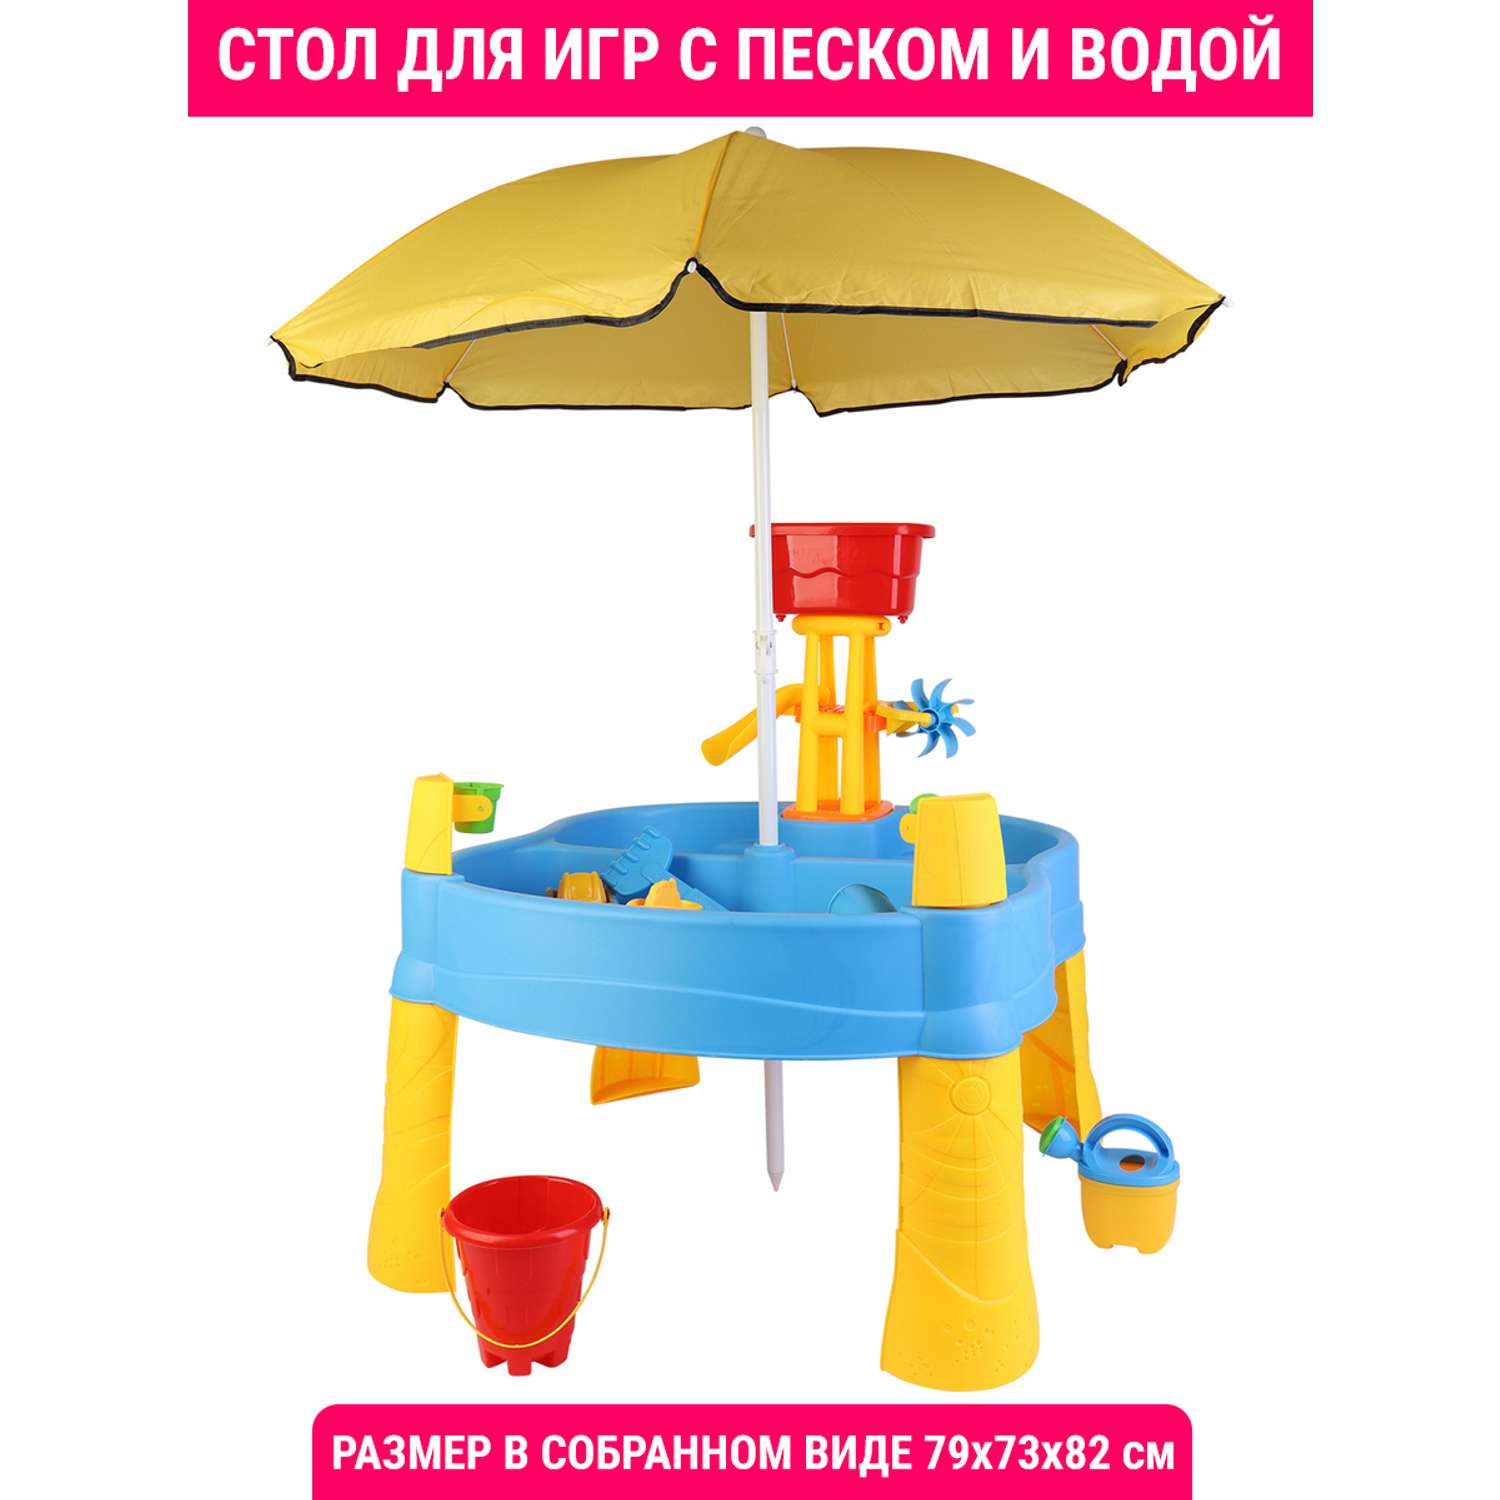 Стол для игр с песком и водой Hualian Toys Водная горка с вертушкой зонт от солнца 78х72х81 см - фото 1